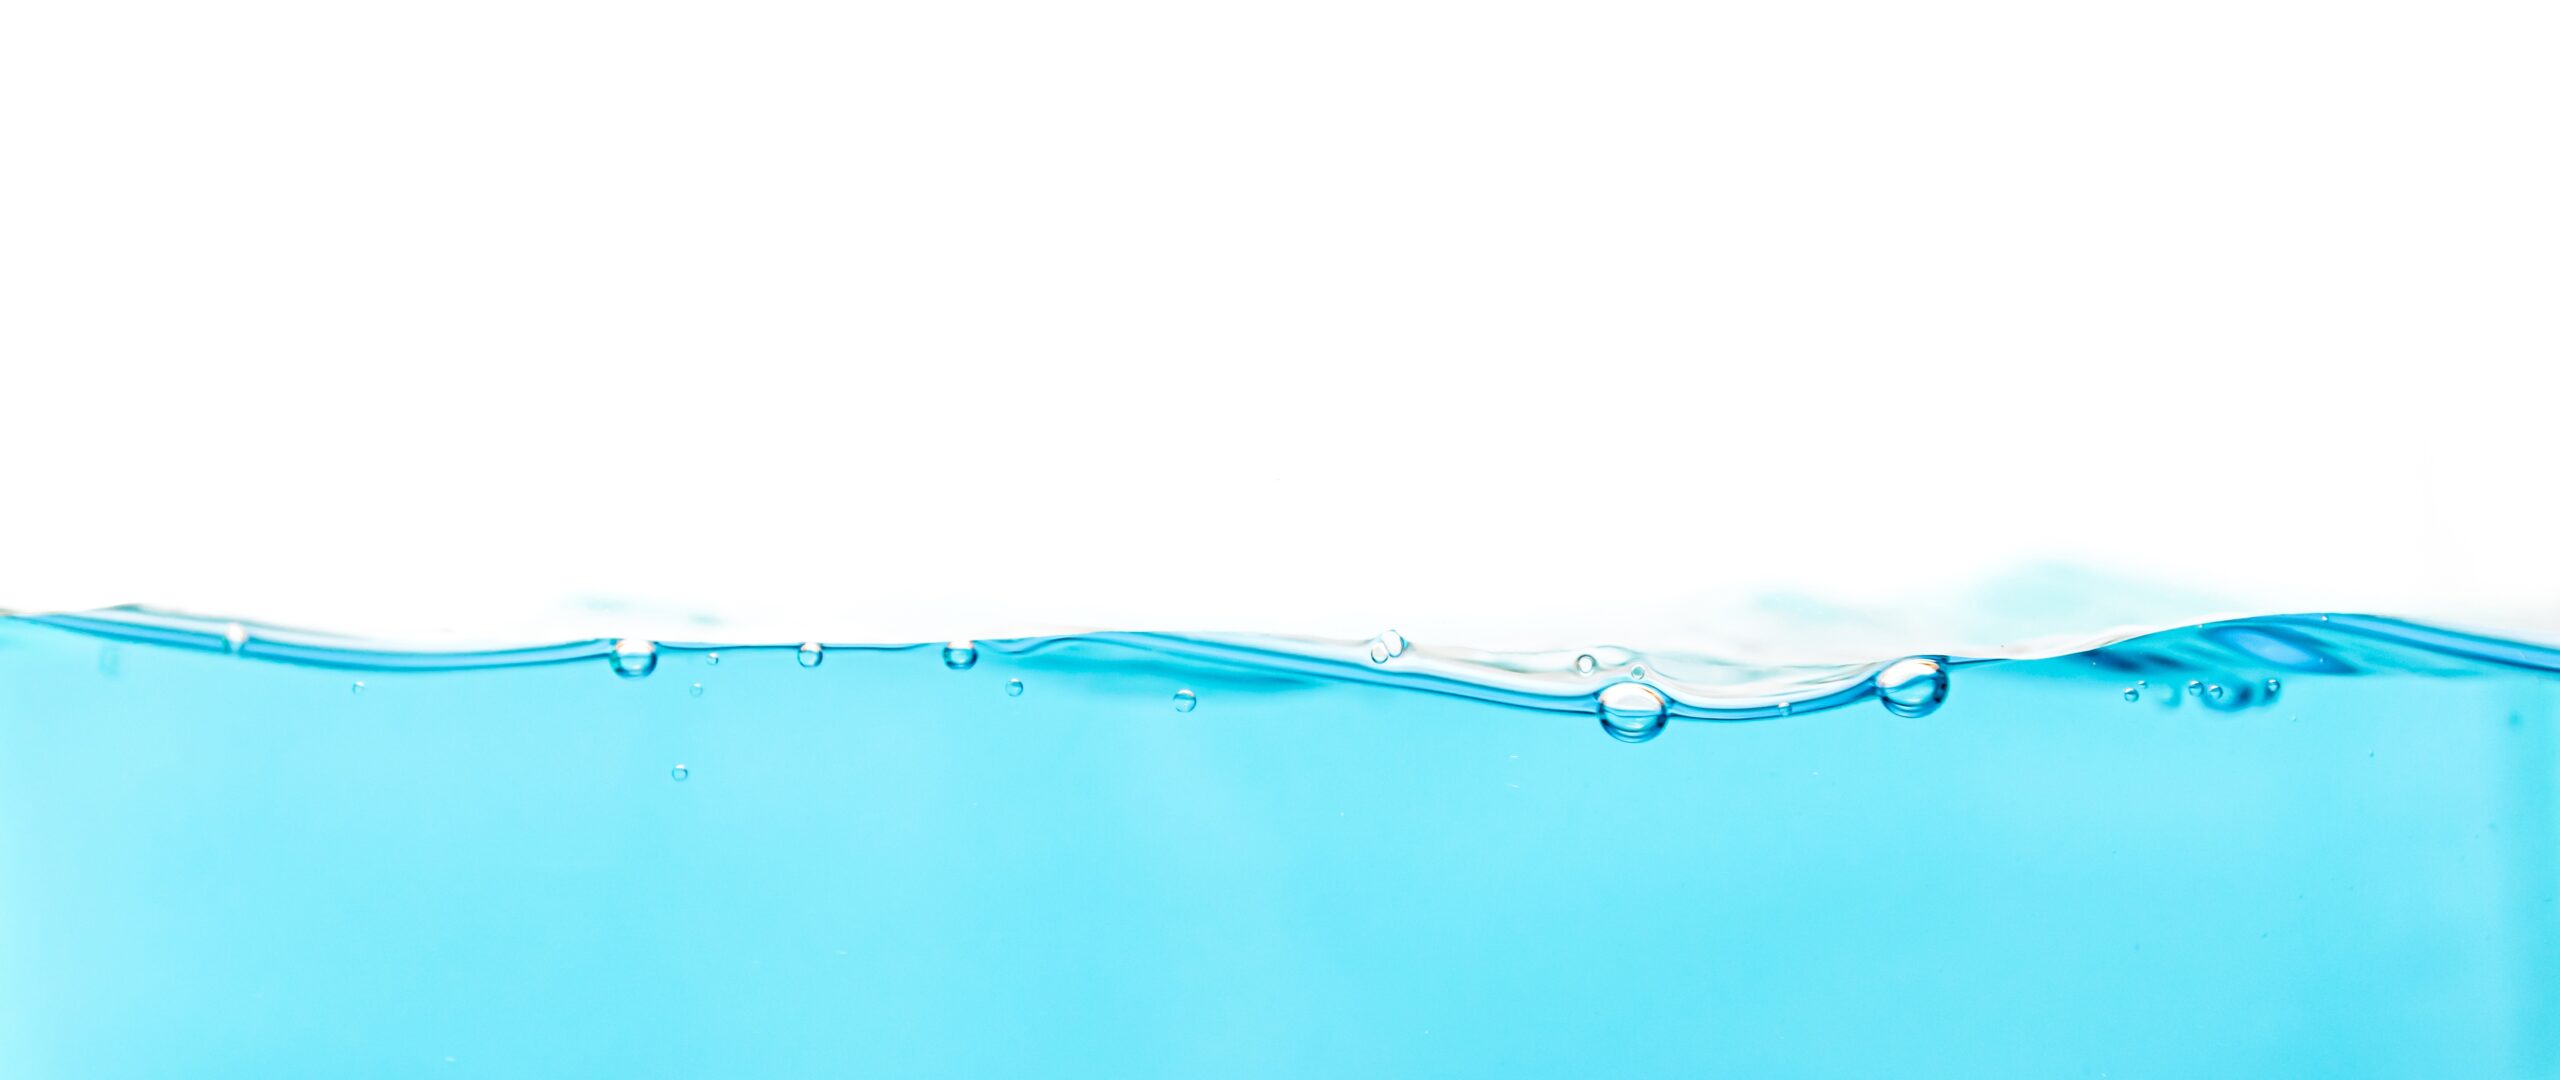 Açık mavi su dalgası ve su baloncuğu üst beyaz yazma alanı